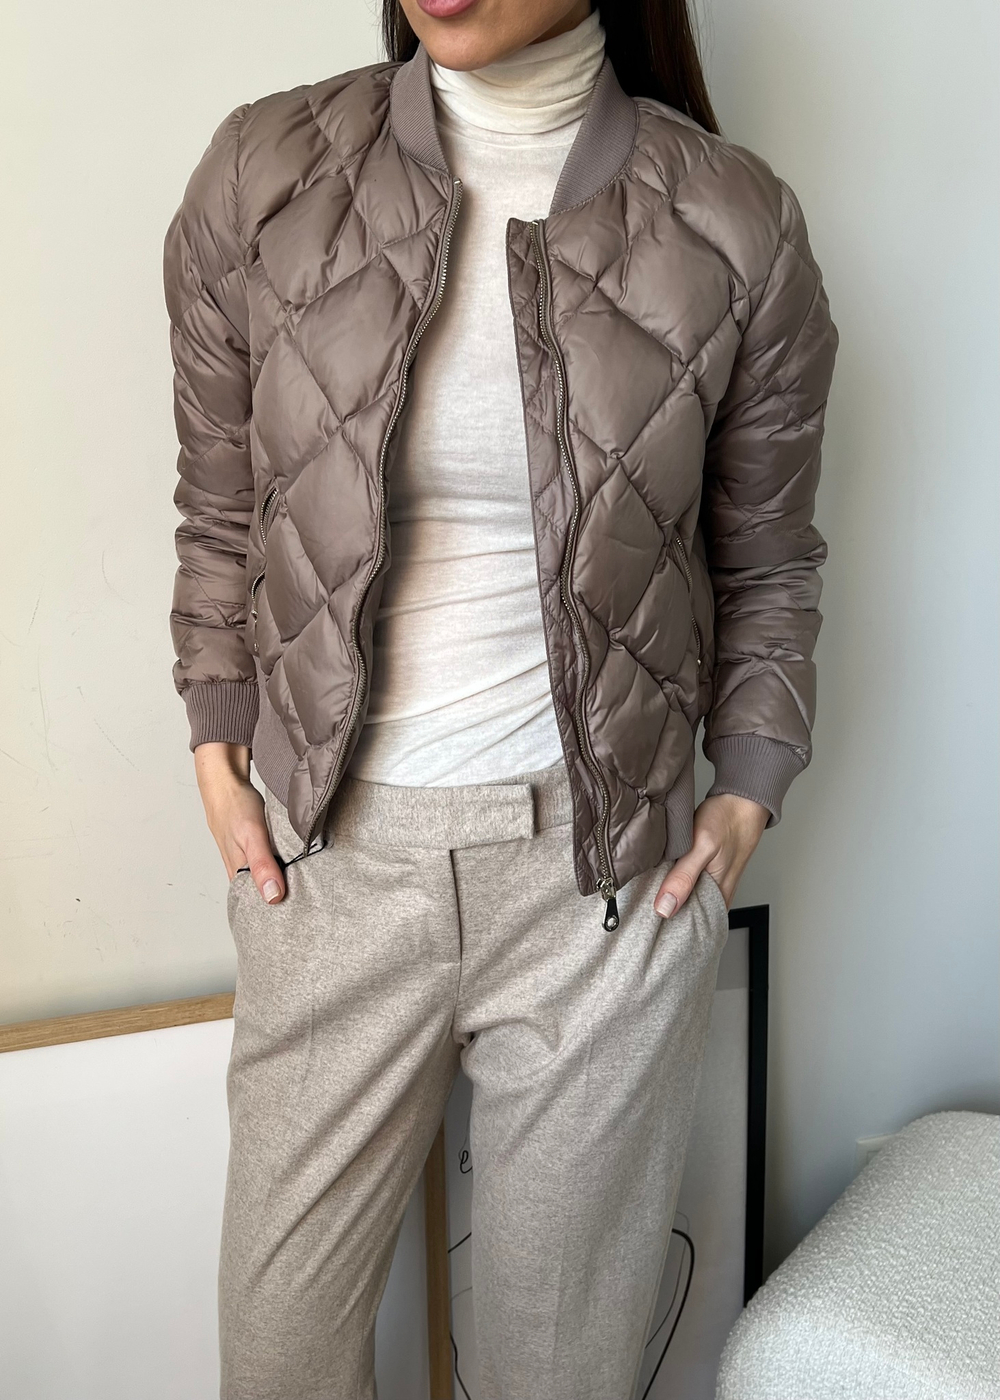 Куртка пуховая Massimo Dutti, S